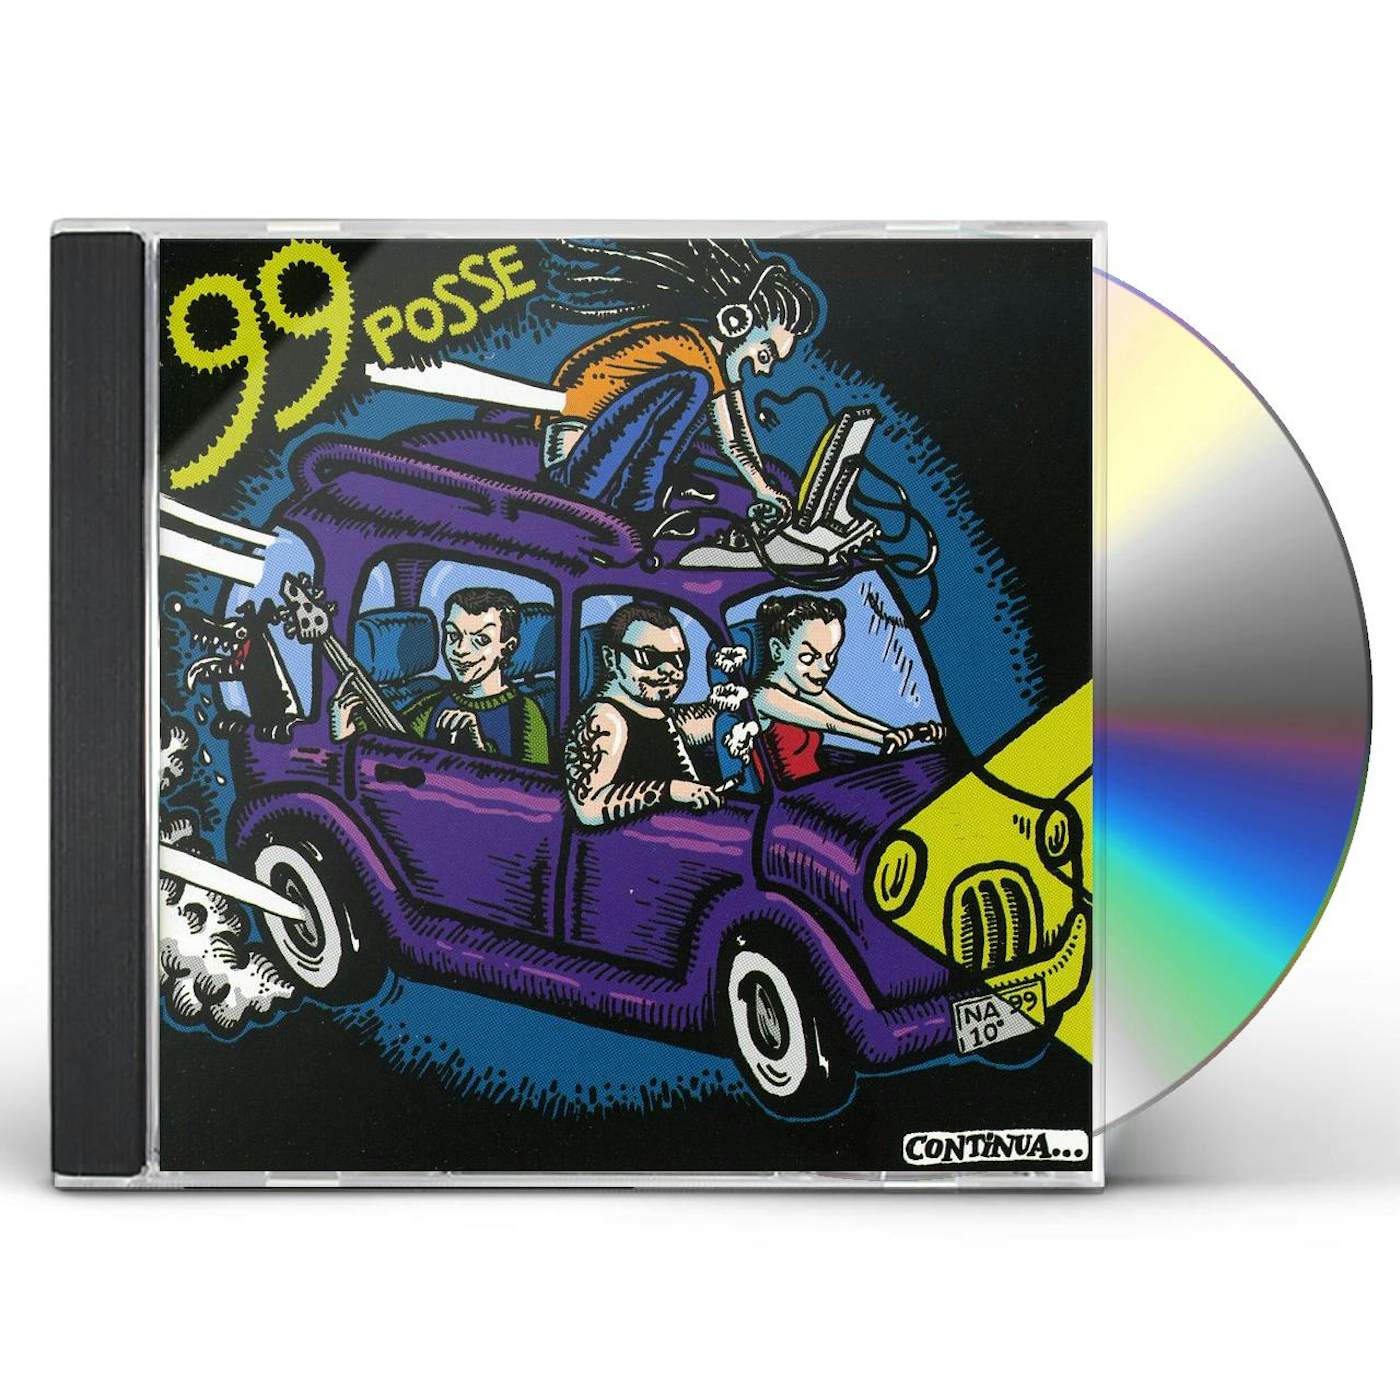 99 Posse NA 99 10 CD